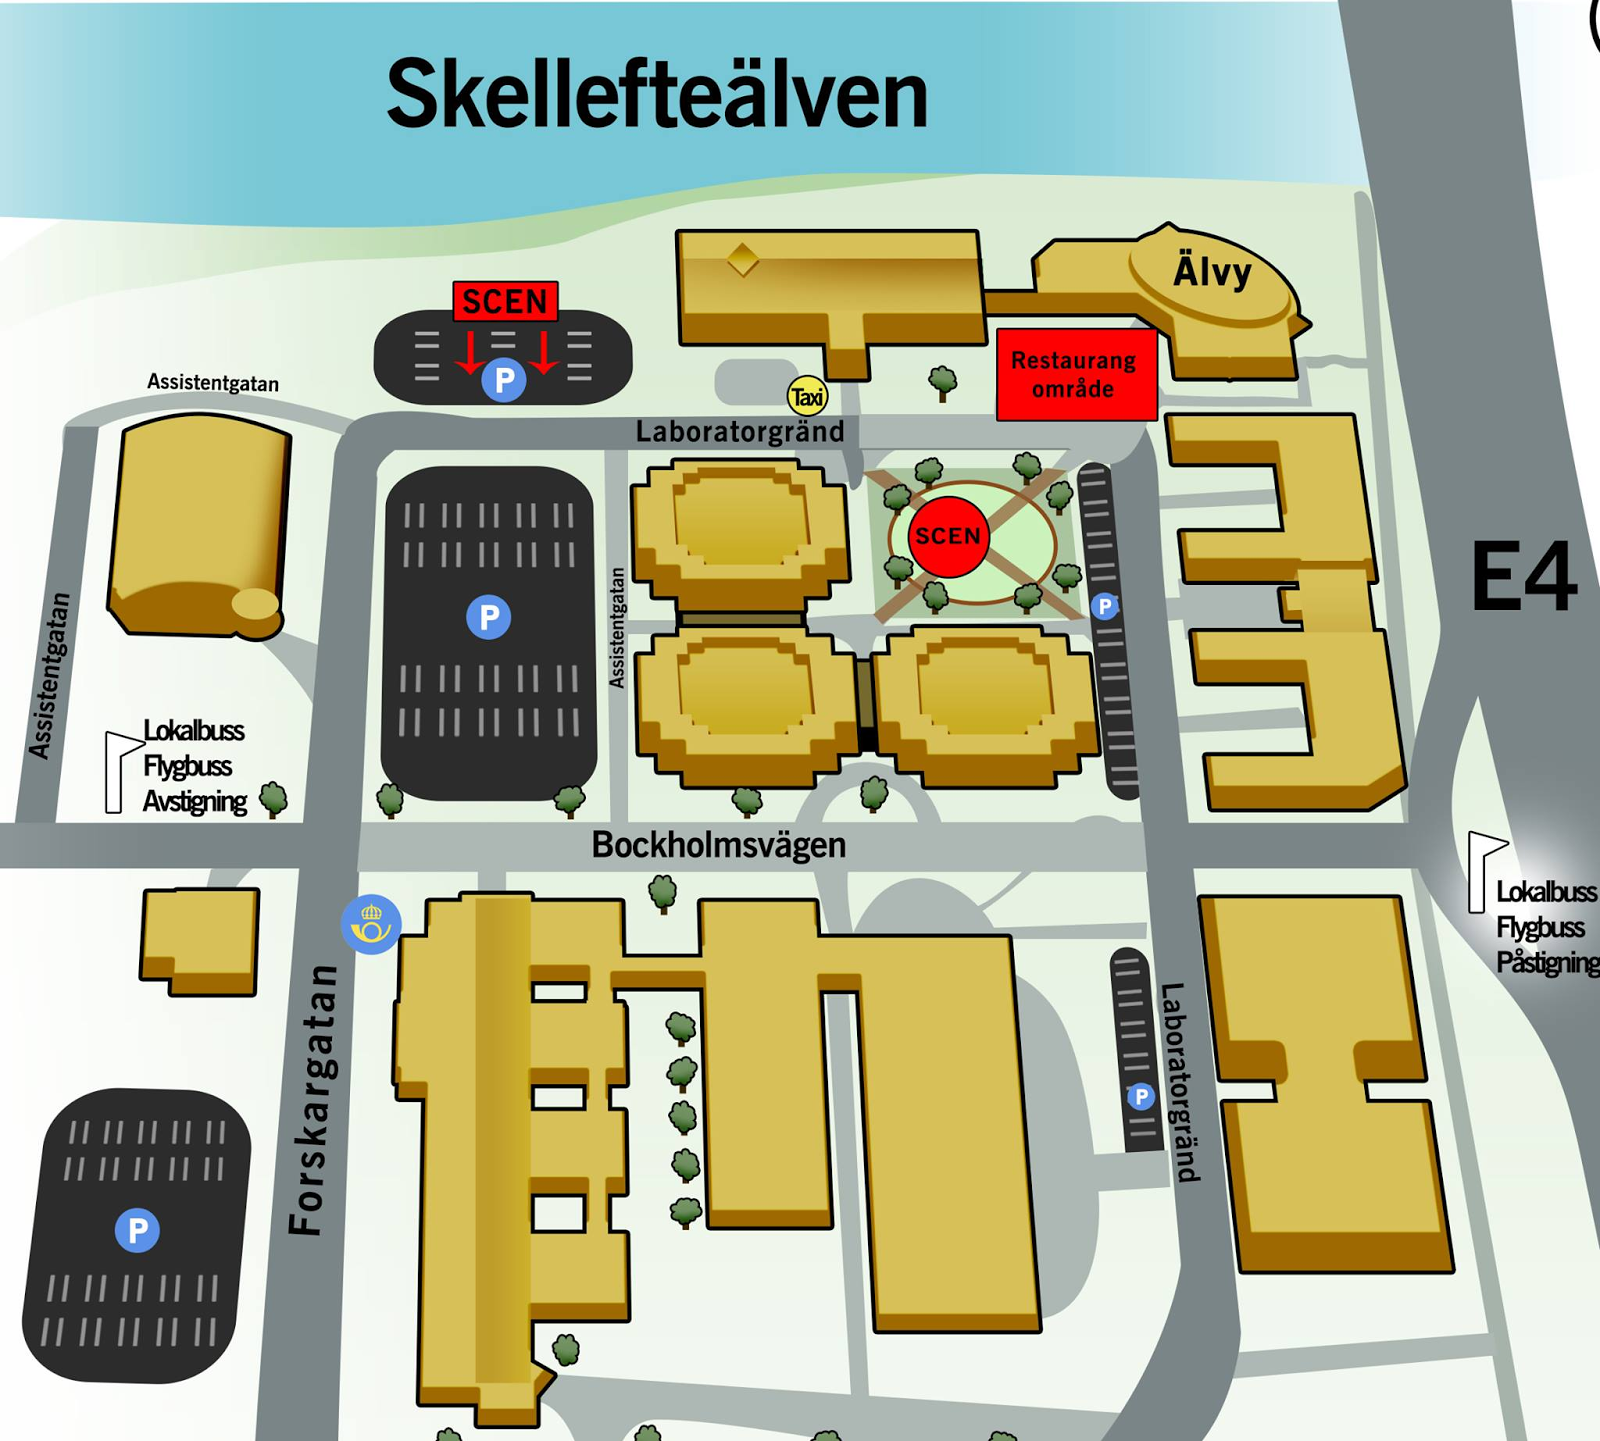 Var? LTU Campus Skellefteå kommer vara arenan för detta event. Främst kommer den nya grönparken samt grusplansparkeringen bredvid Forum användas.